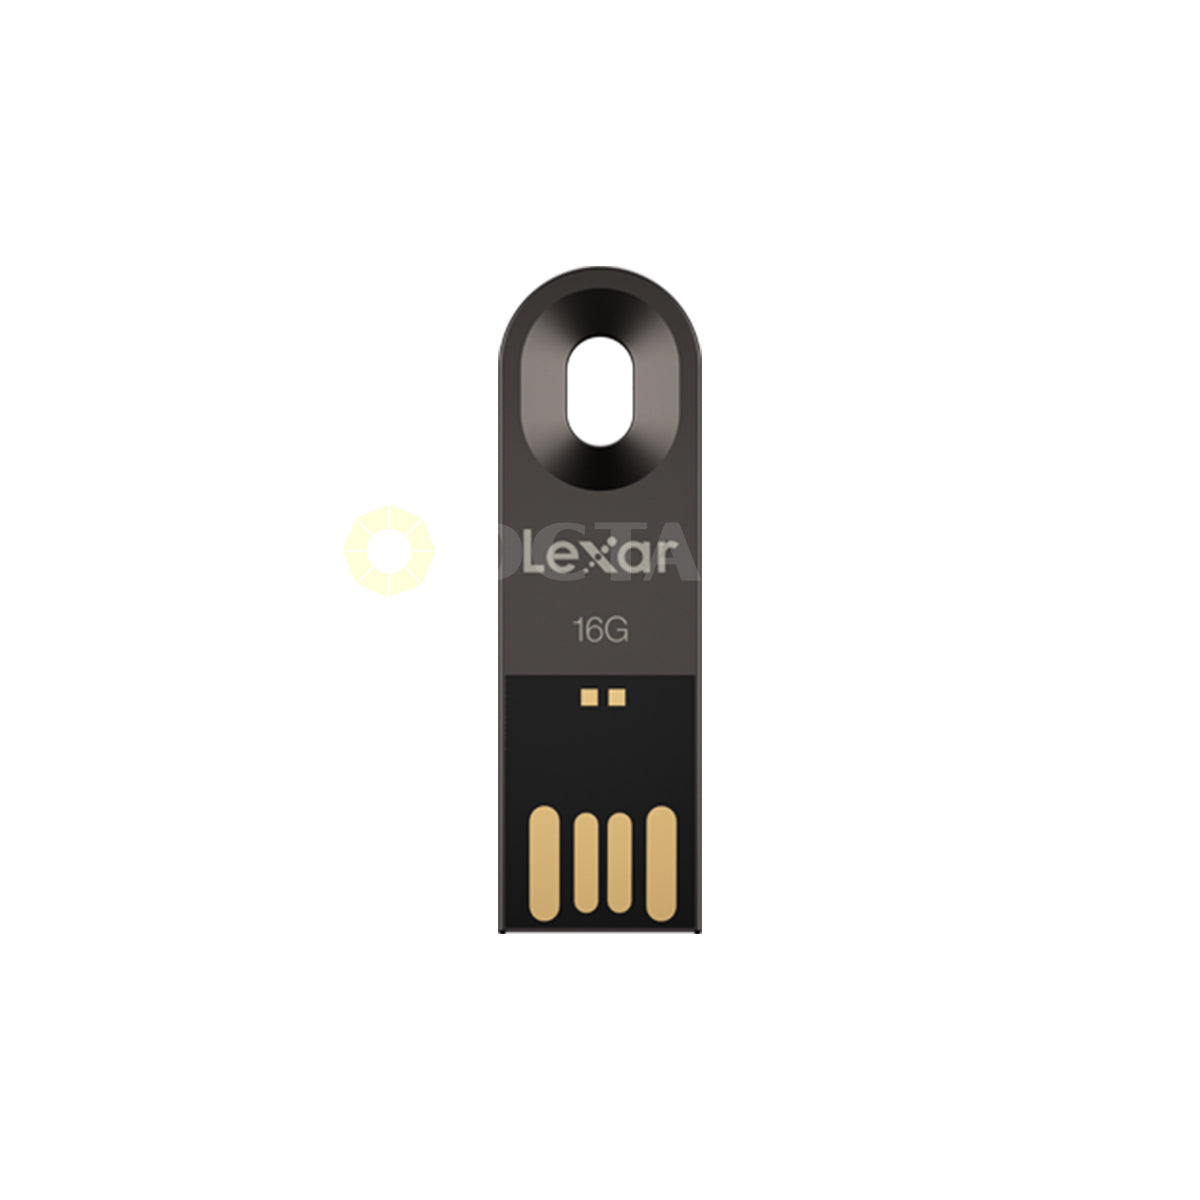 LEXAR 16G JUMPDRIVE M25 METAL USB2.0 NEW